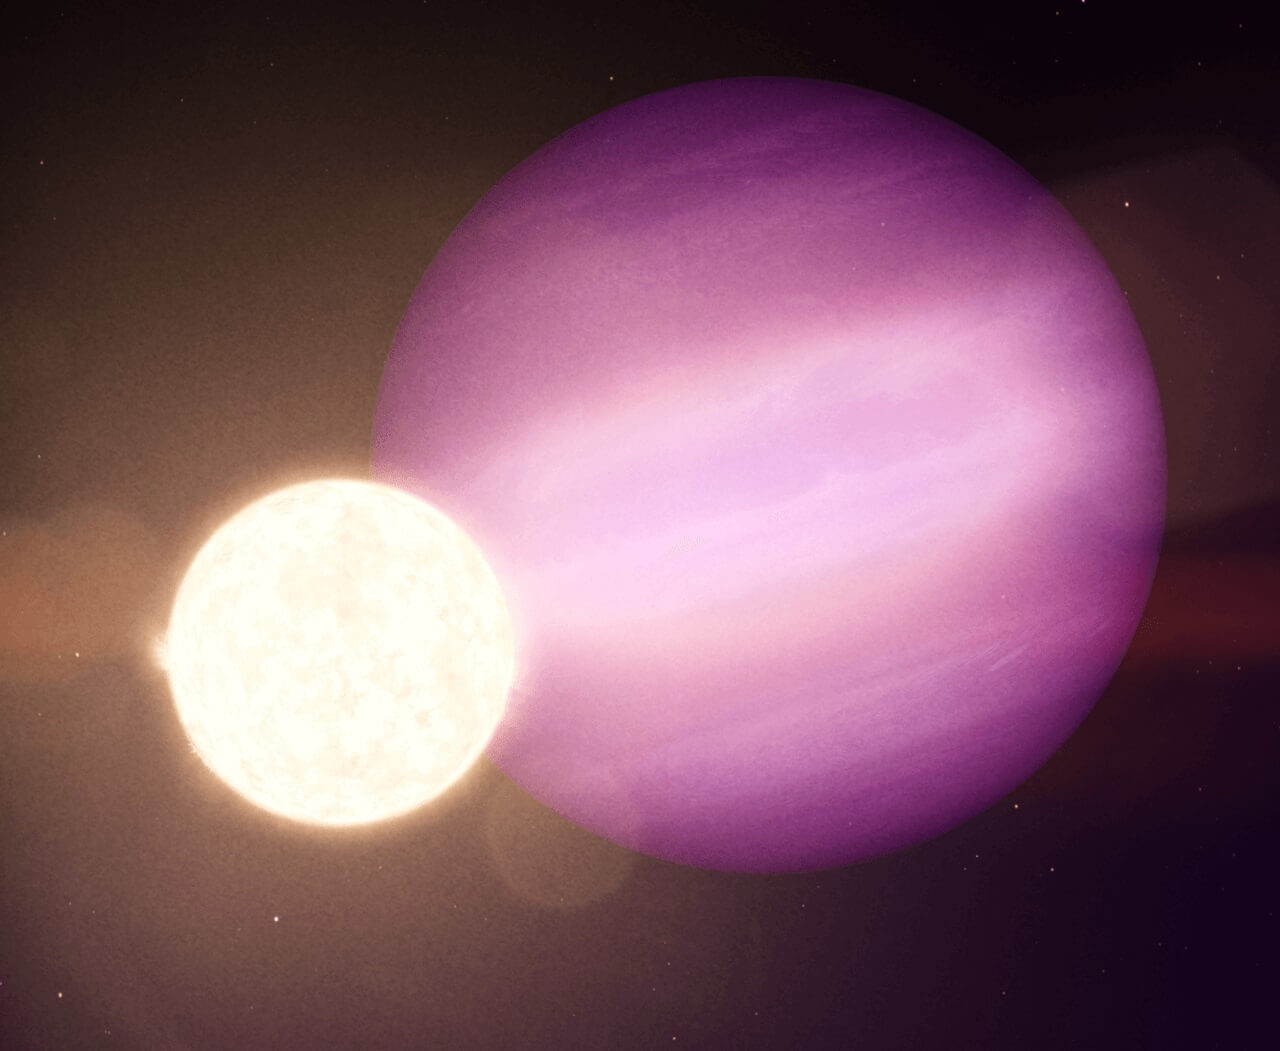 ციცქნა მკვდარი ვარსკვლავის გარშემო უზარმაზარი გაზის გიგანტი პლანეტა აღმოაჩინეს — #1tvმეცნიერება